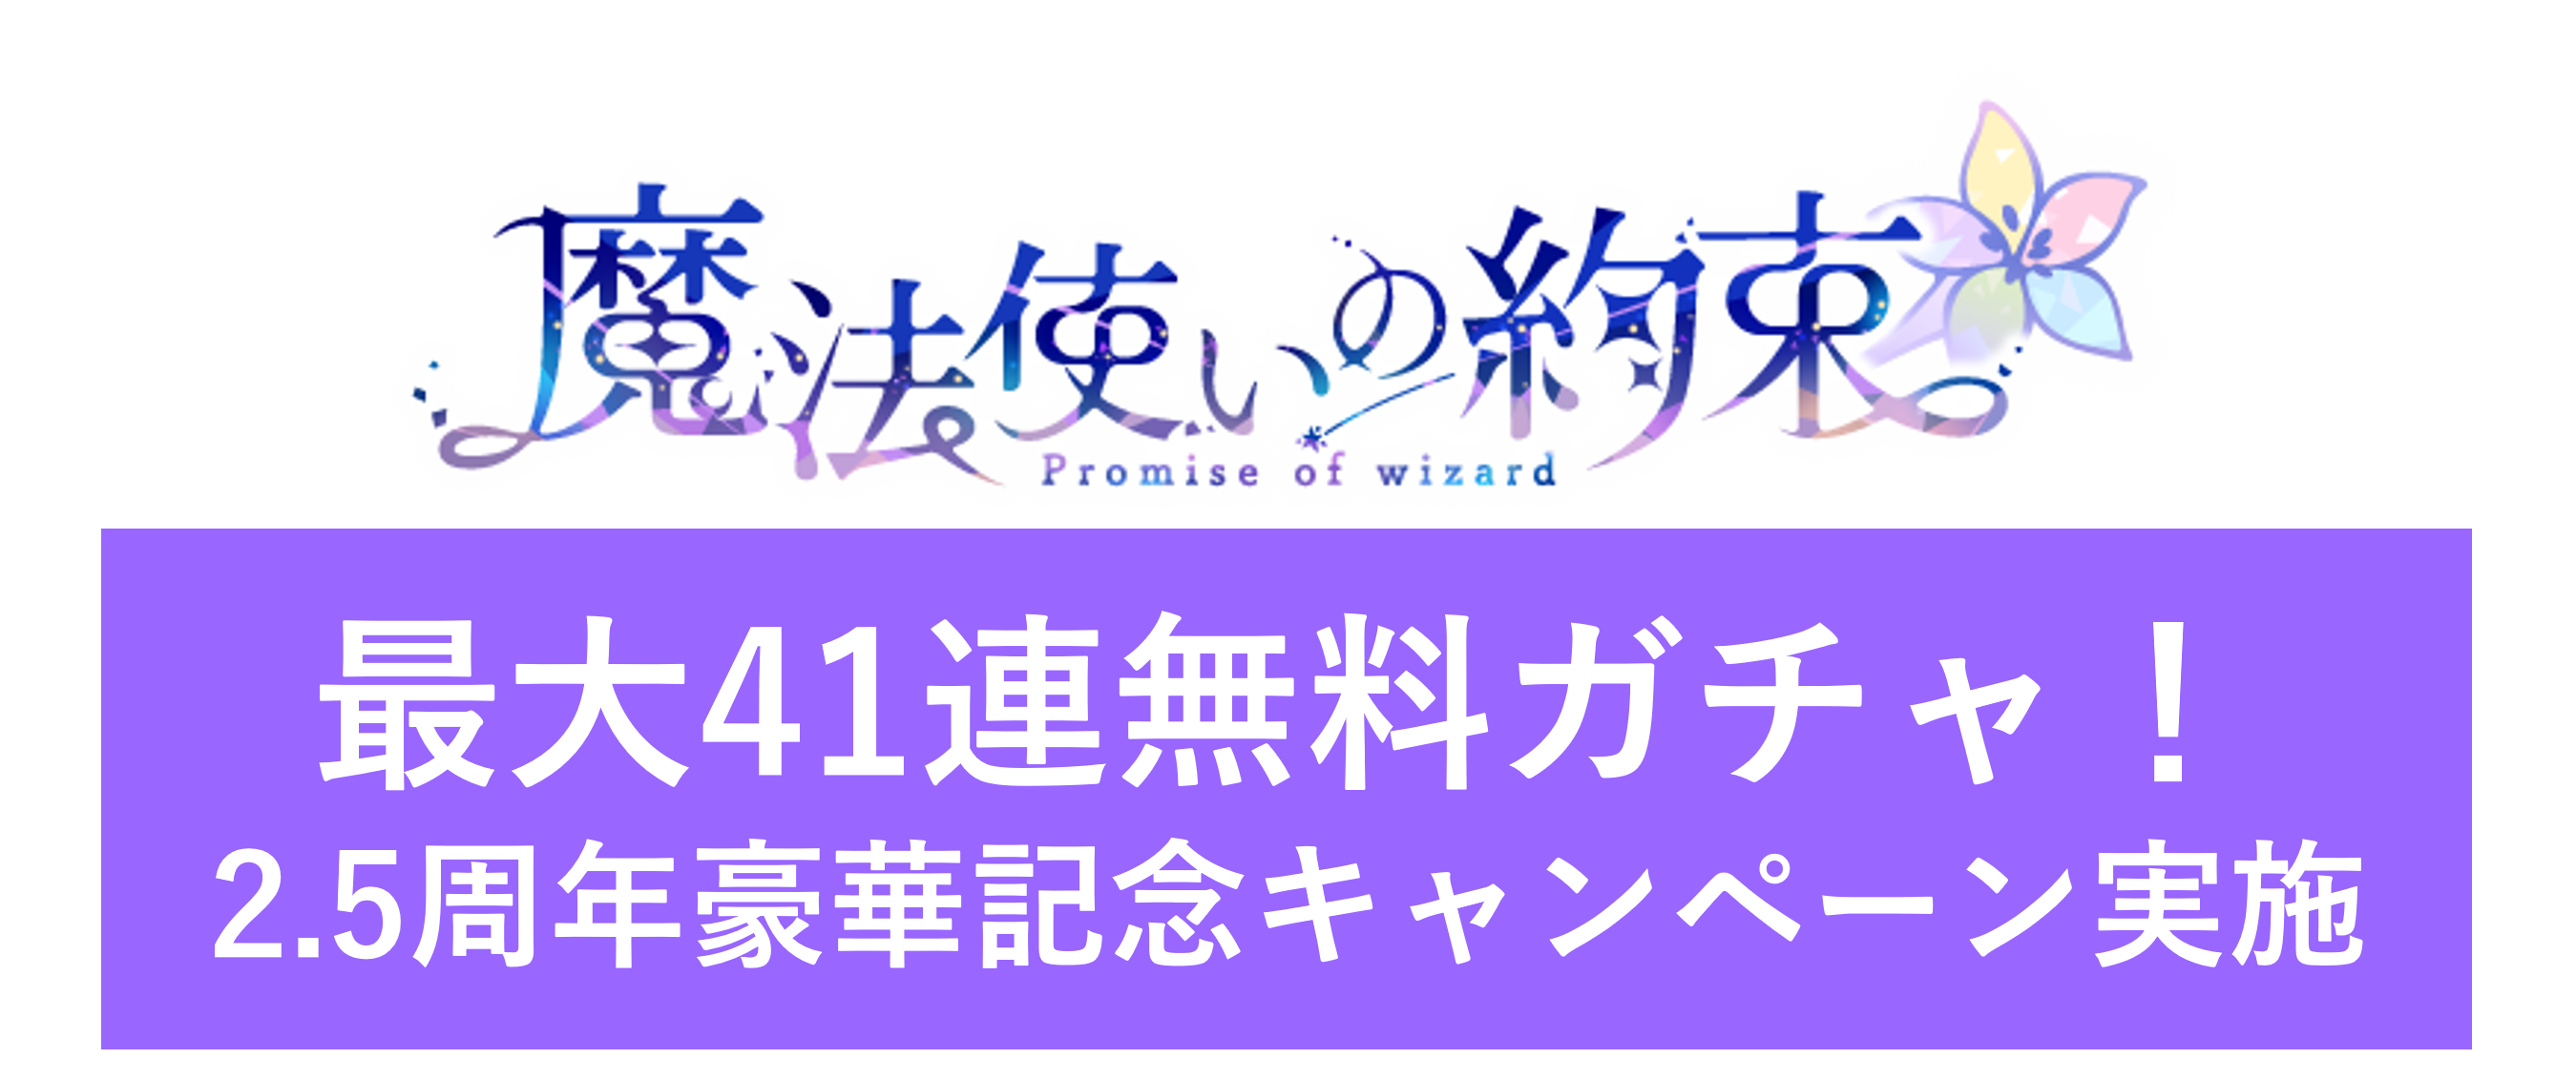 【魔法使いの約束】2.5周年豪華記念キャンペーン実施のお知らせ